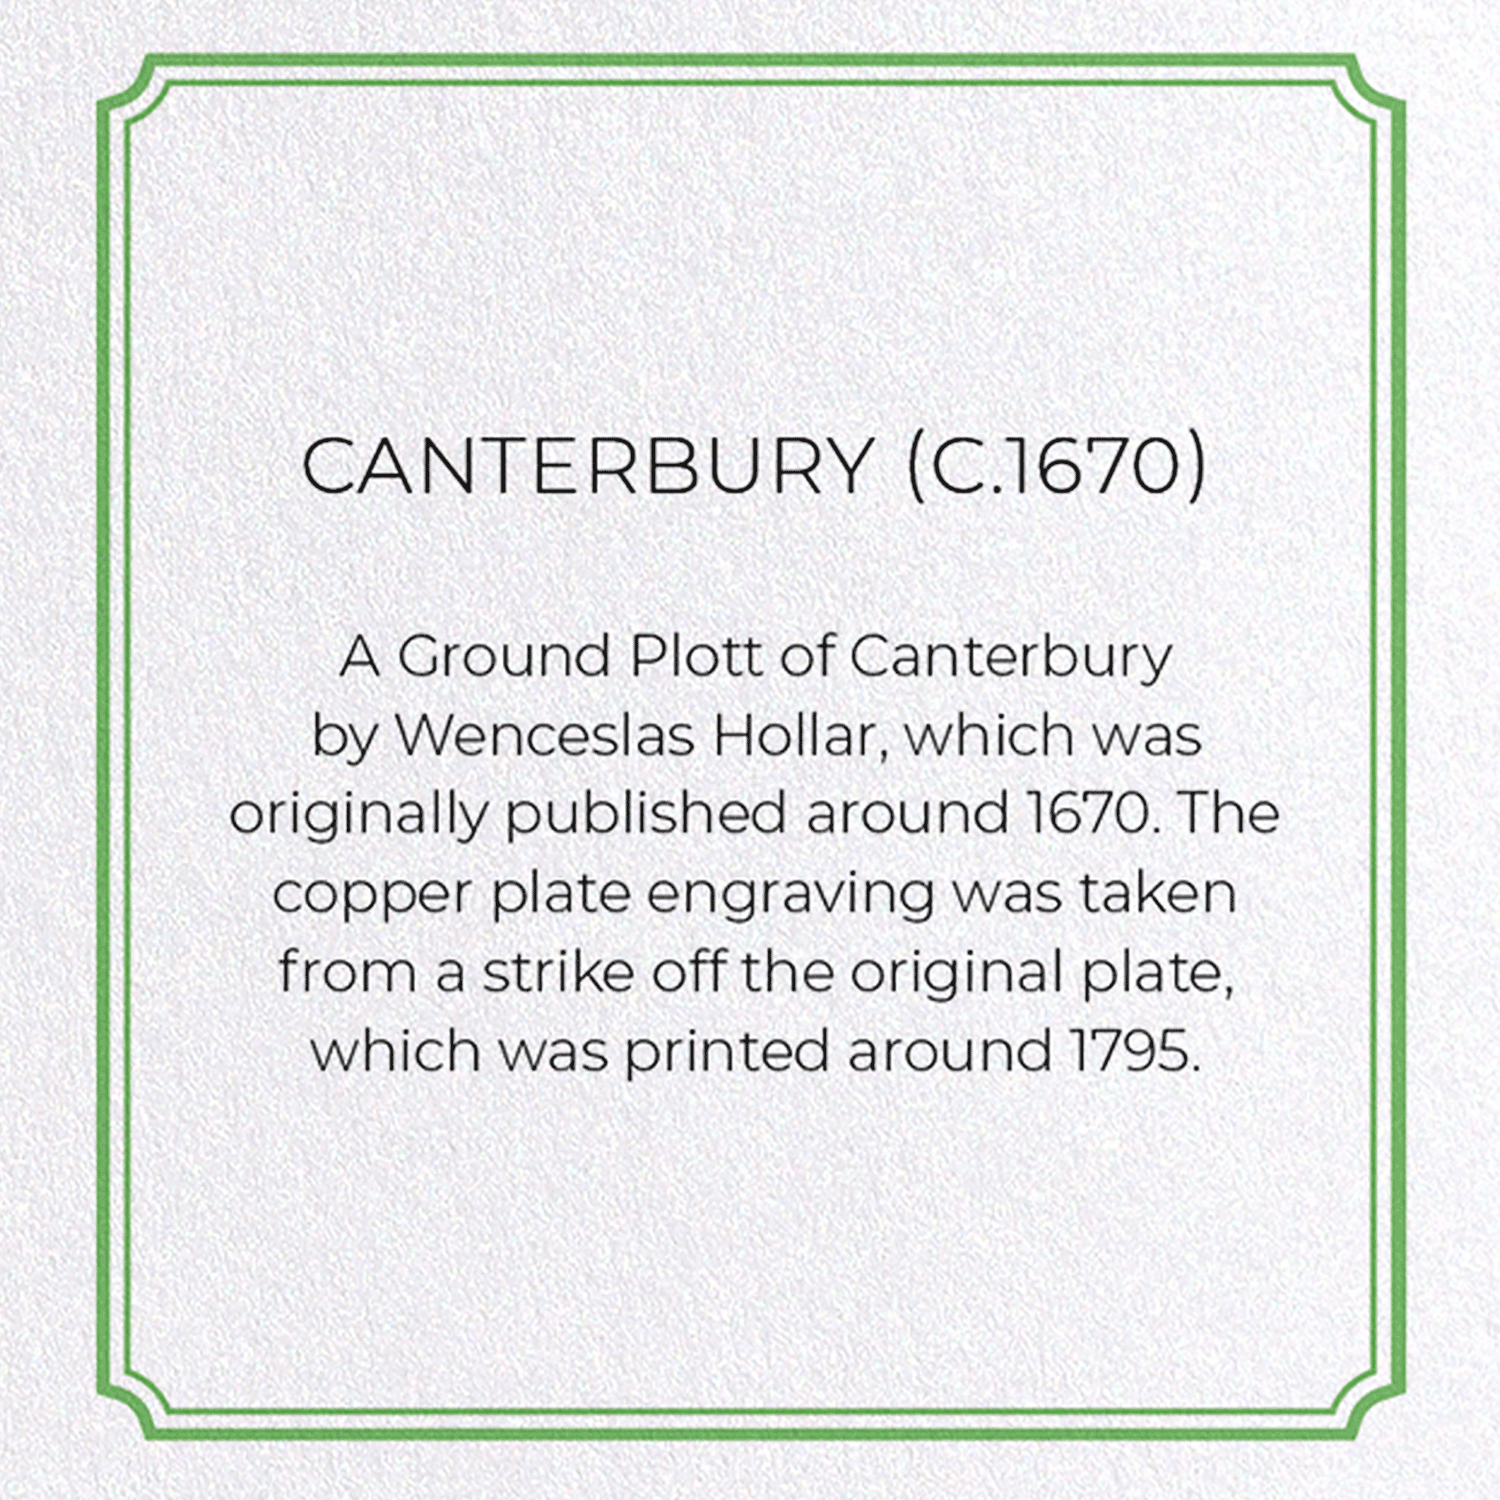 CANTERBURY (C.1670)